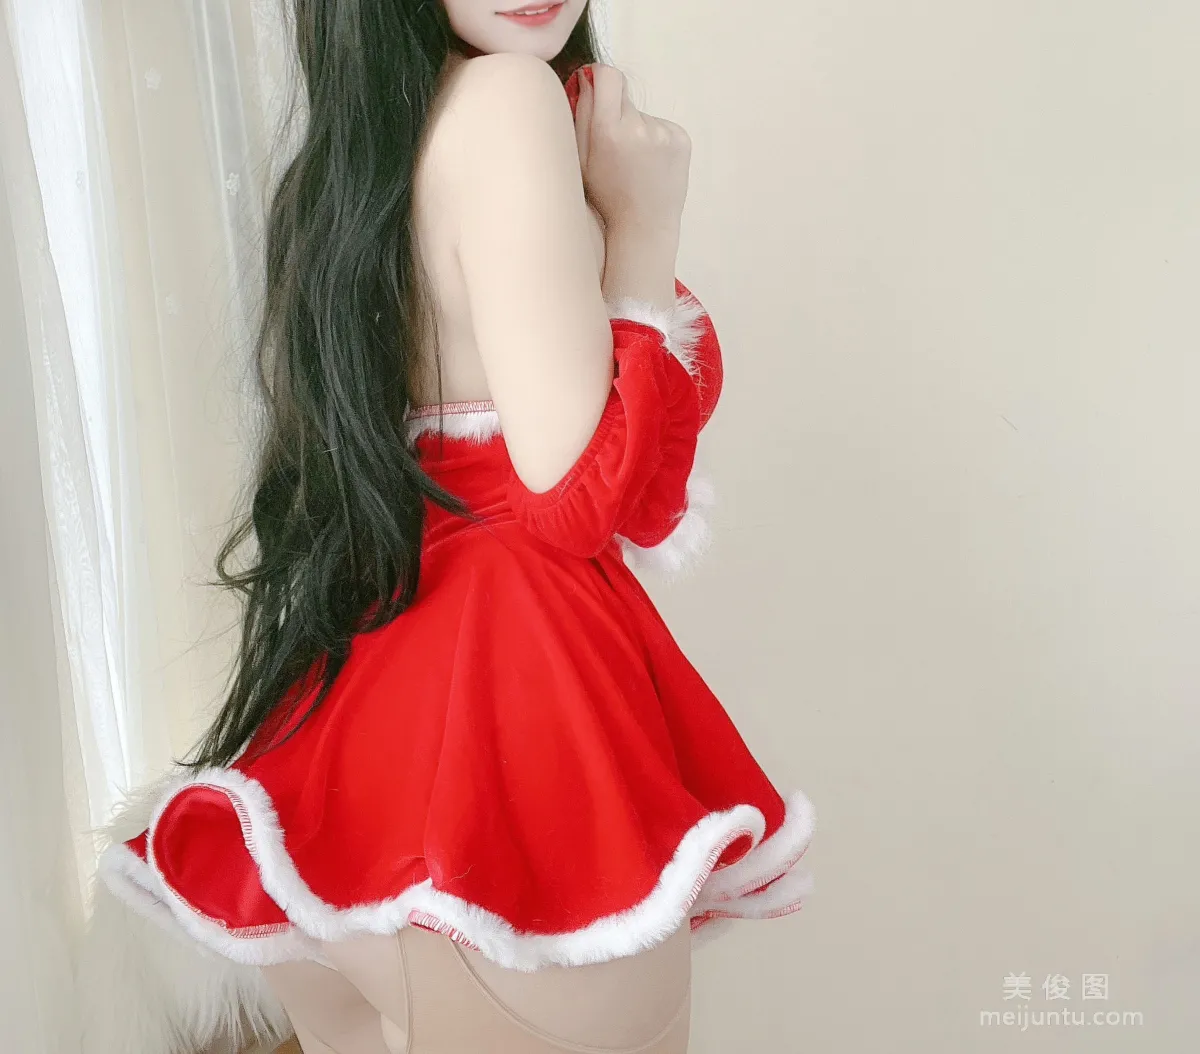 [网红COSER] 动漫博主小仓千代w - 红色圣诞礼物裙17